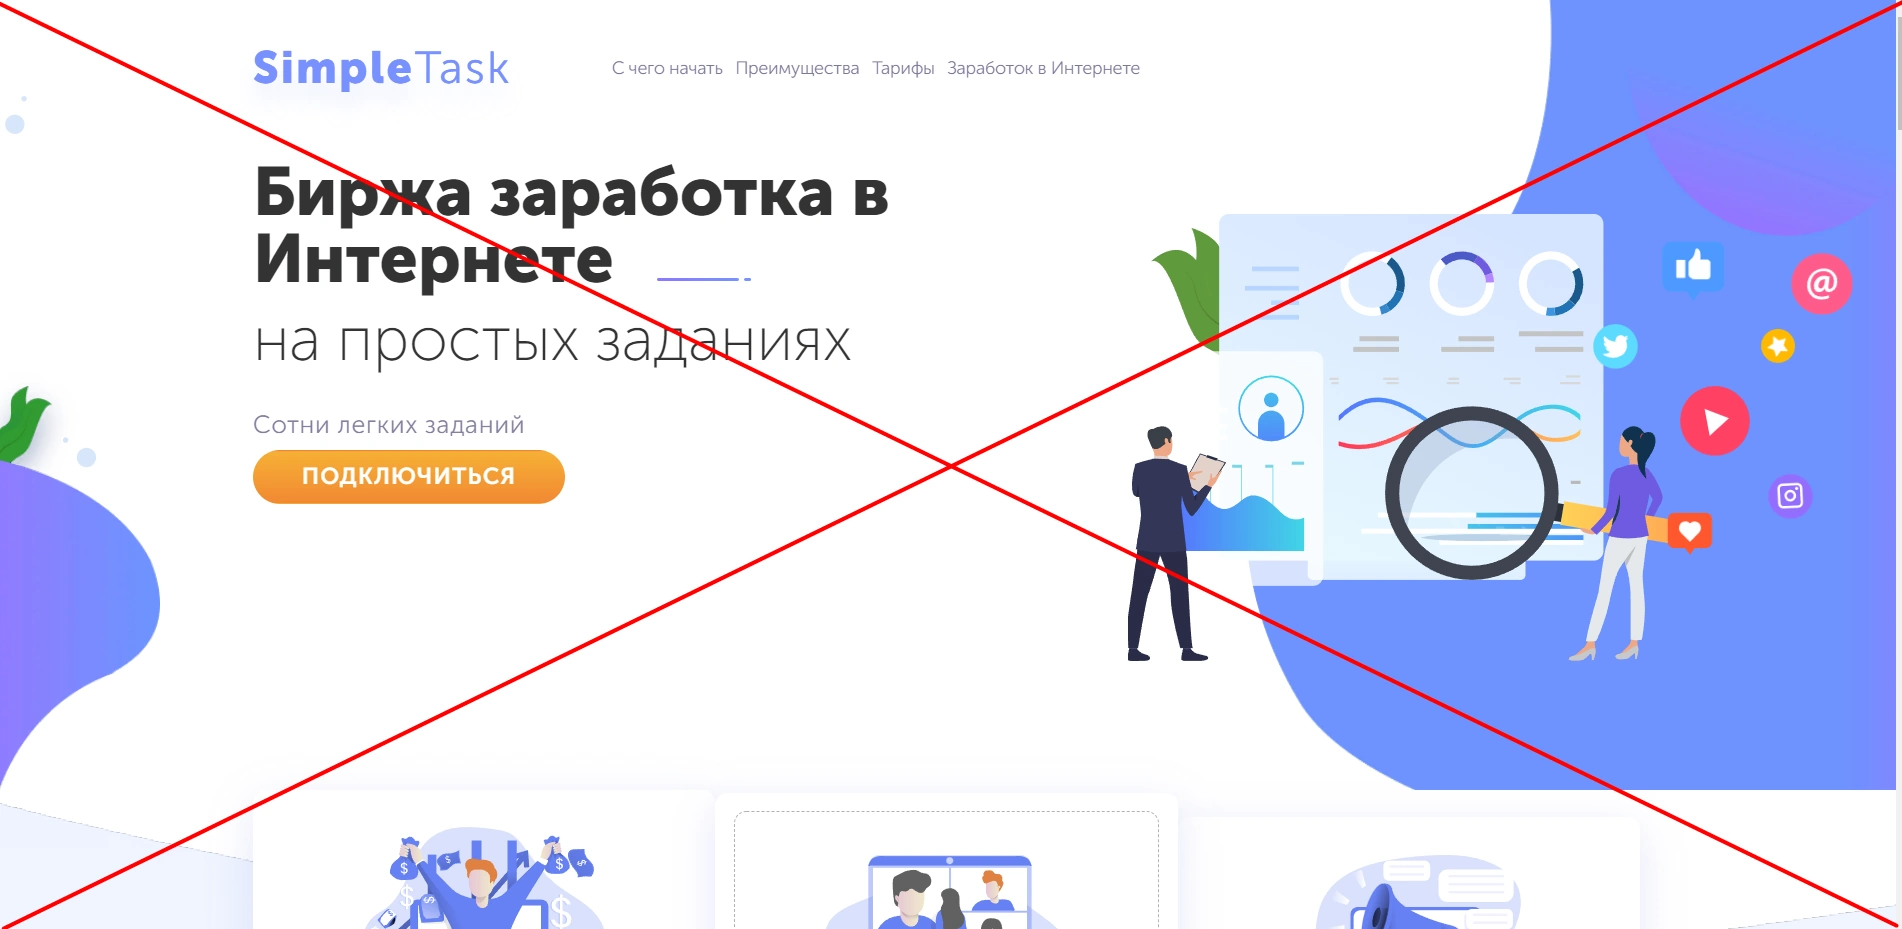 SimpleTask Murmansk RUS - как вернуть деньги и отключить подписку? Инструкция